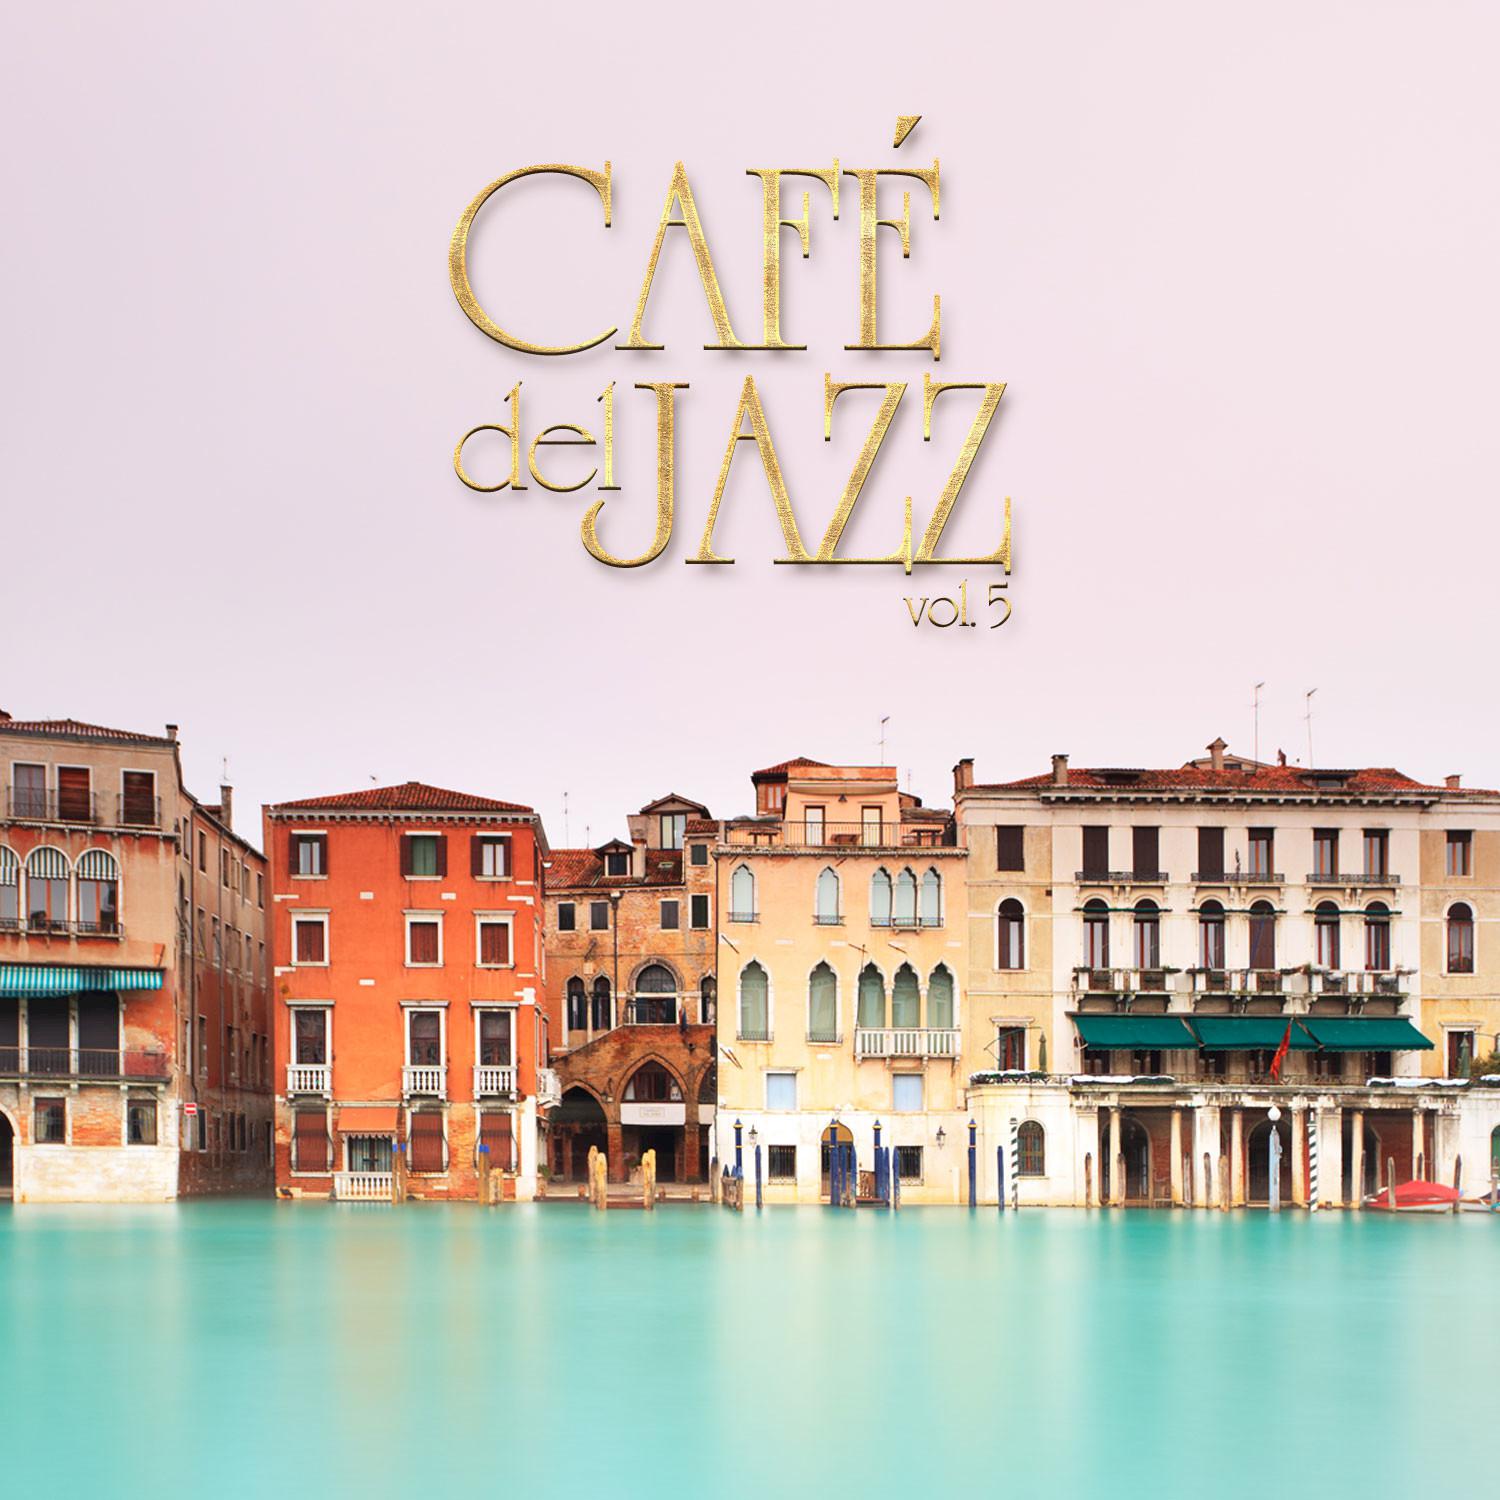 Cafe Del Jazz, Vol. 5